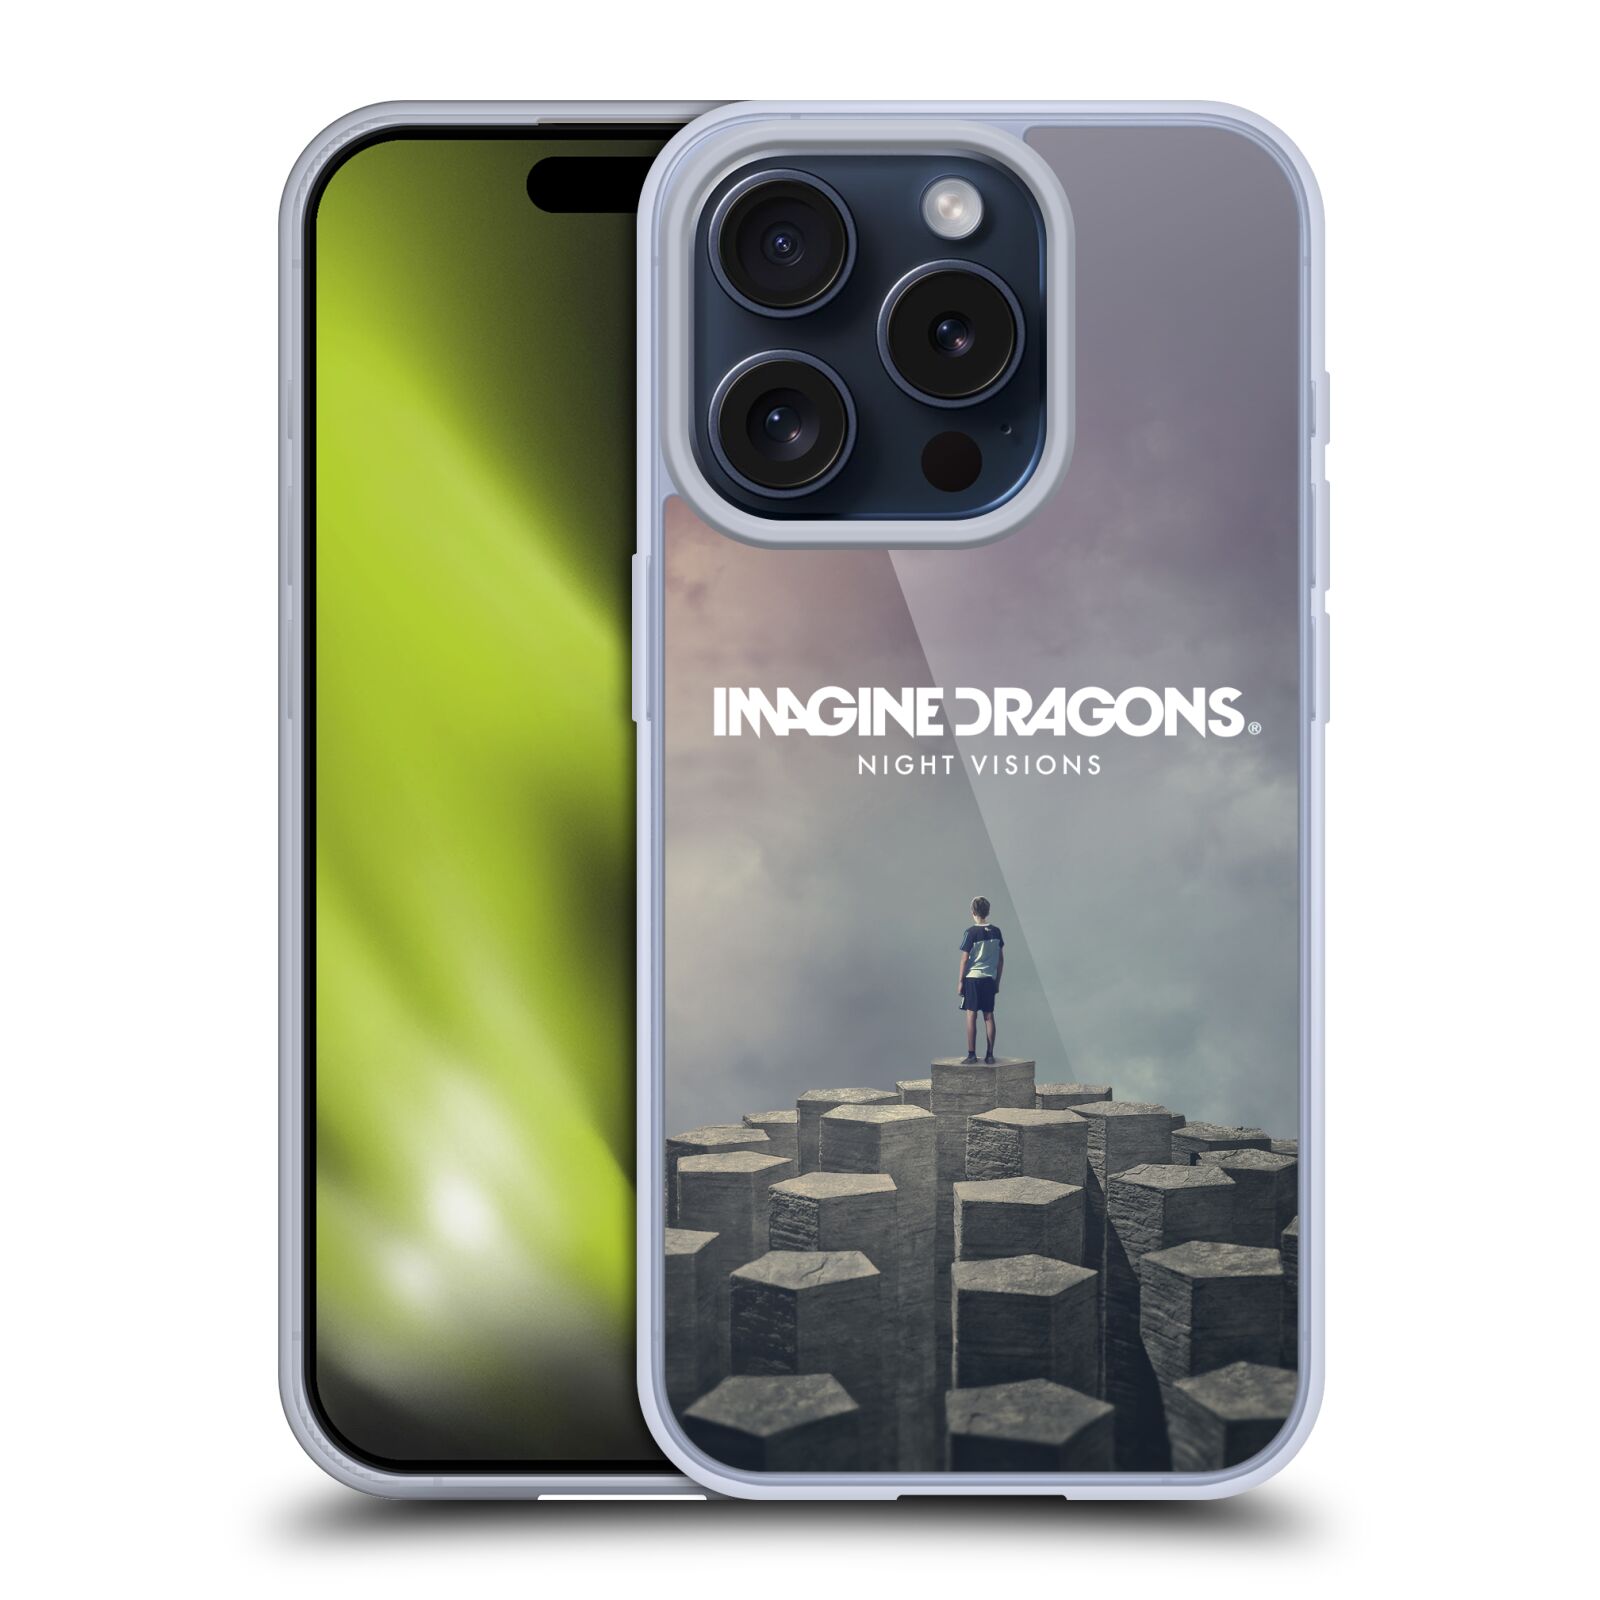 Silikonové lesklé pouzdro na mobil Apple iPhone 15 Pro - Imagine Dragons - Night Visions (Silikonový lesklý kryt, obal, pouzdro na mobilní telefon Apple iPhone 15 Pro s licencovaným motivem Imagine Dragons - Night Visions)